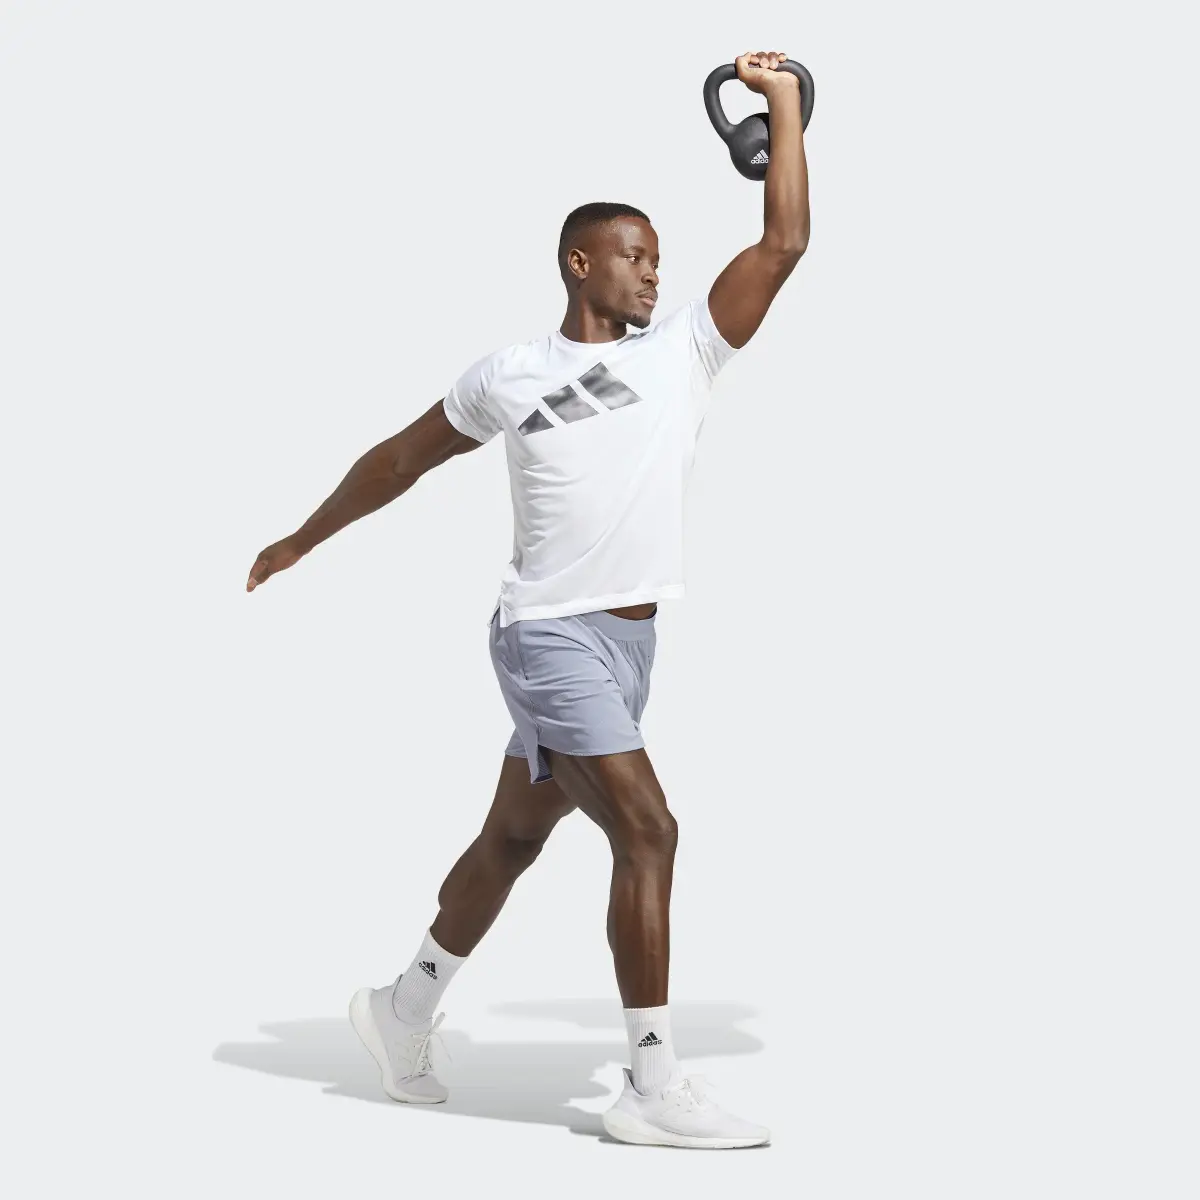 Adidas Designed for Training HIIT Training Shorts. 3